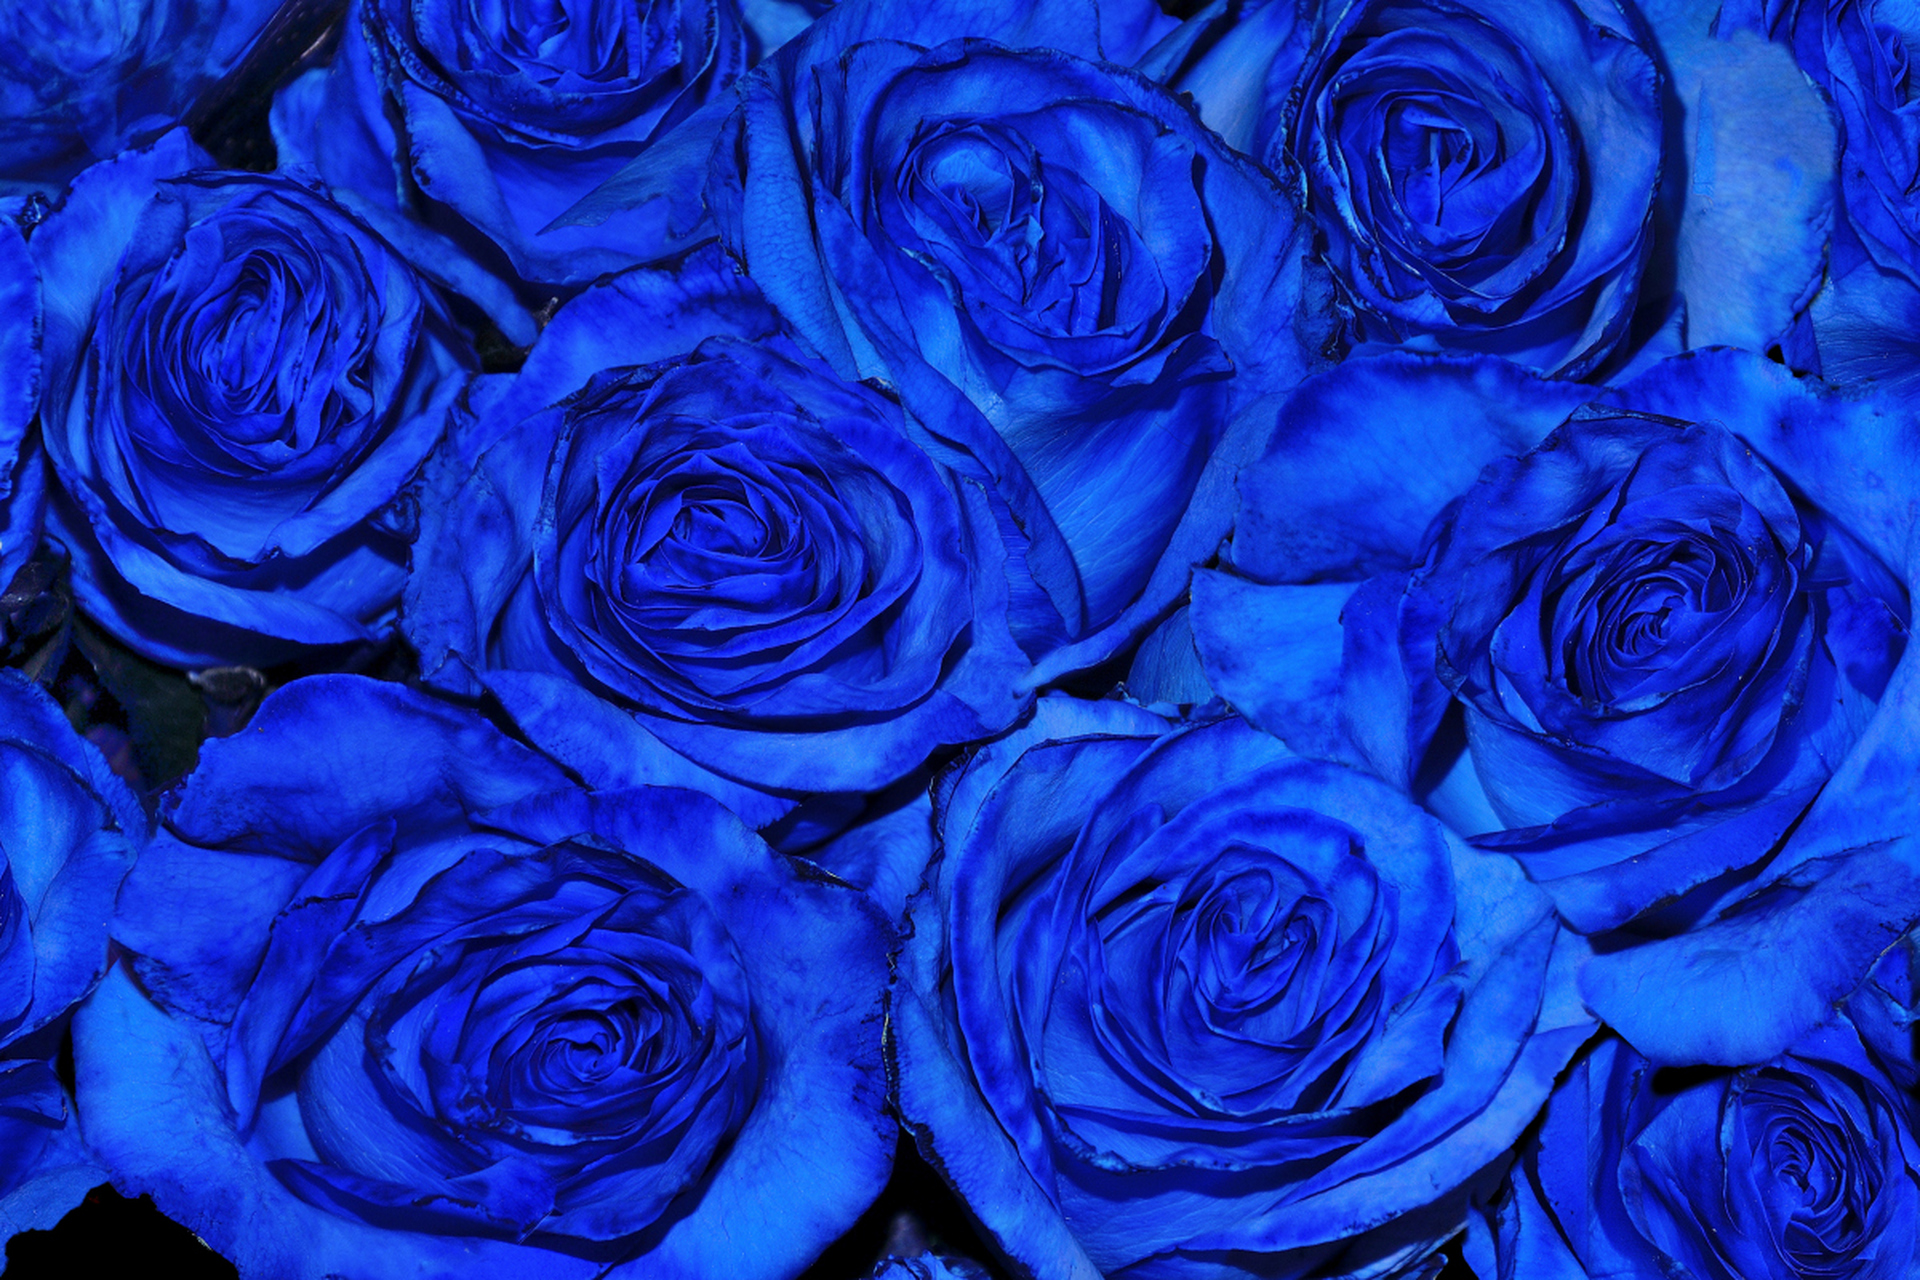 蓝色妖姬是玫瑰花的一种,很昂贵单枝蓝色妖姬 花语相守是一种承诺,人